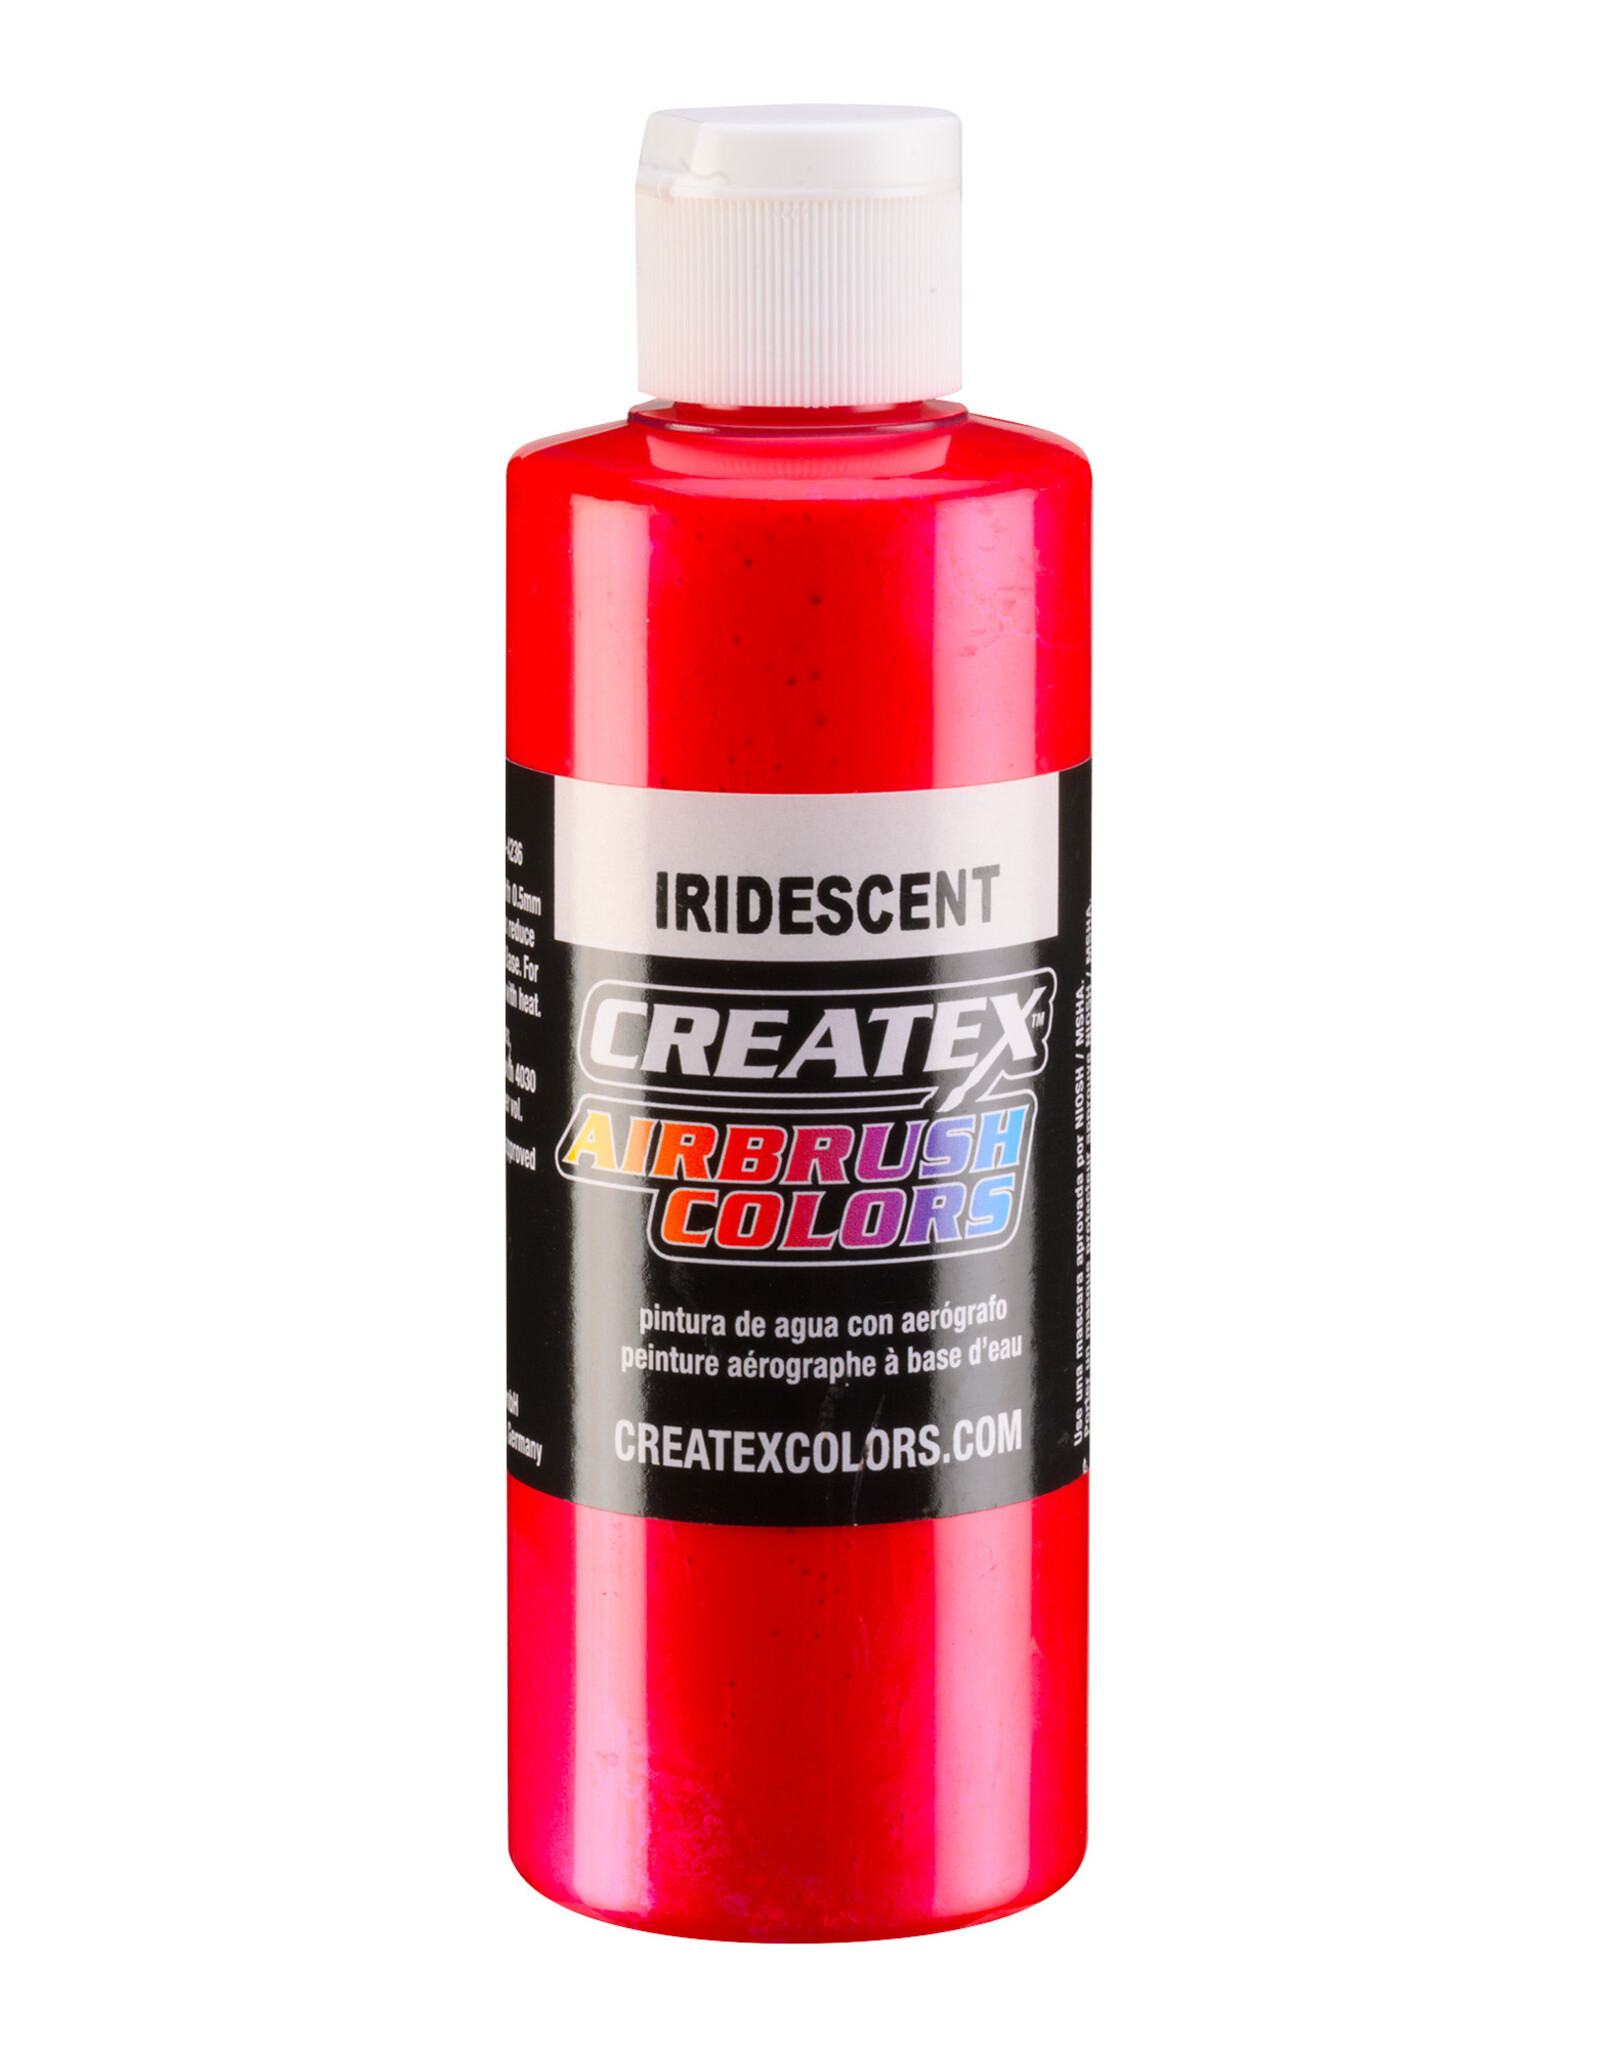 CREATEX COLORS Createx Airbrush Colors Iridescent Red, 4oz